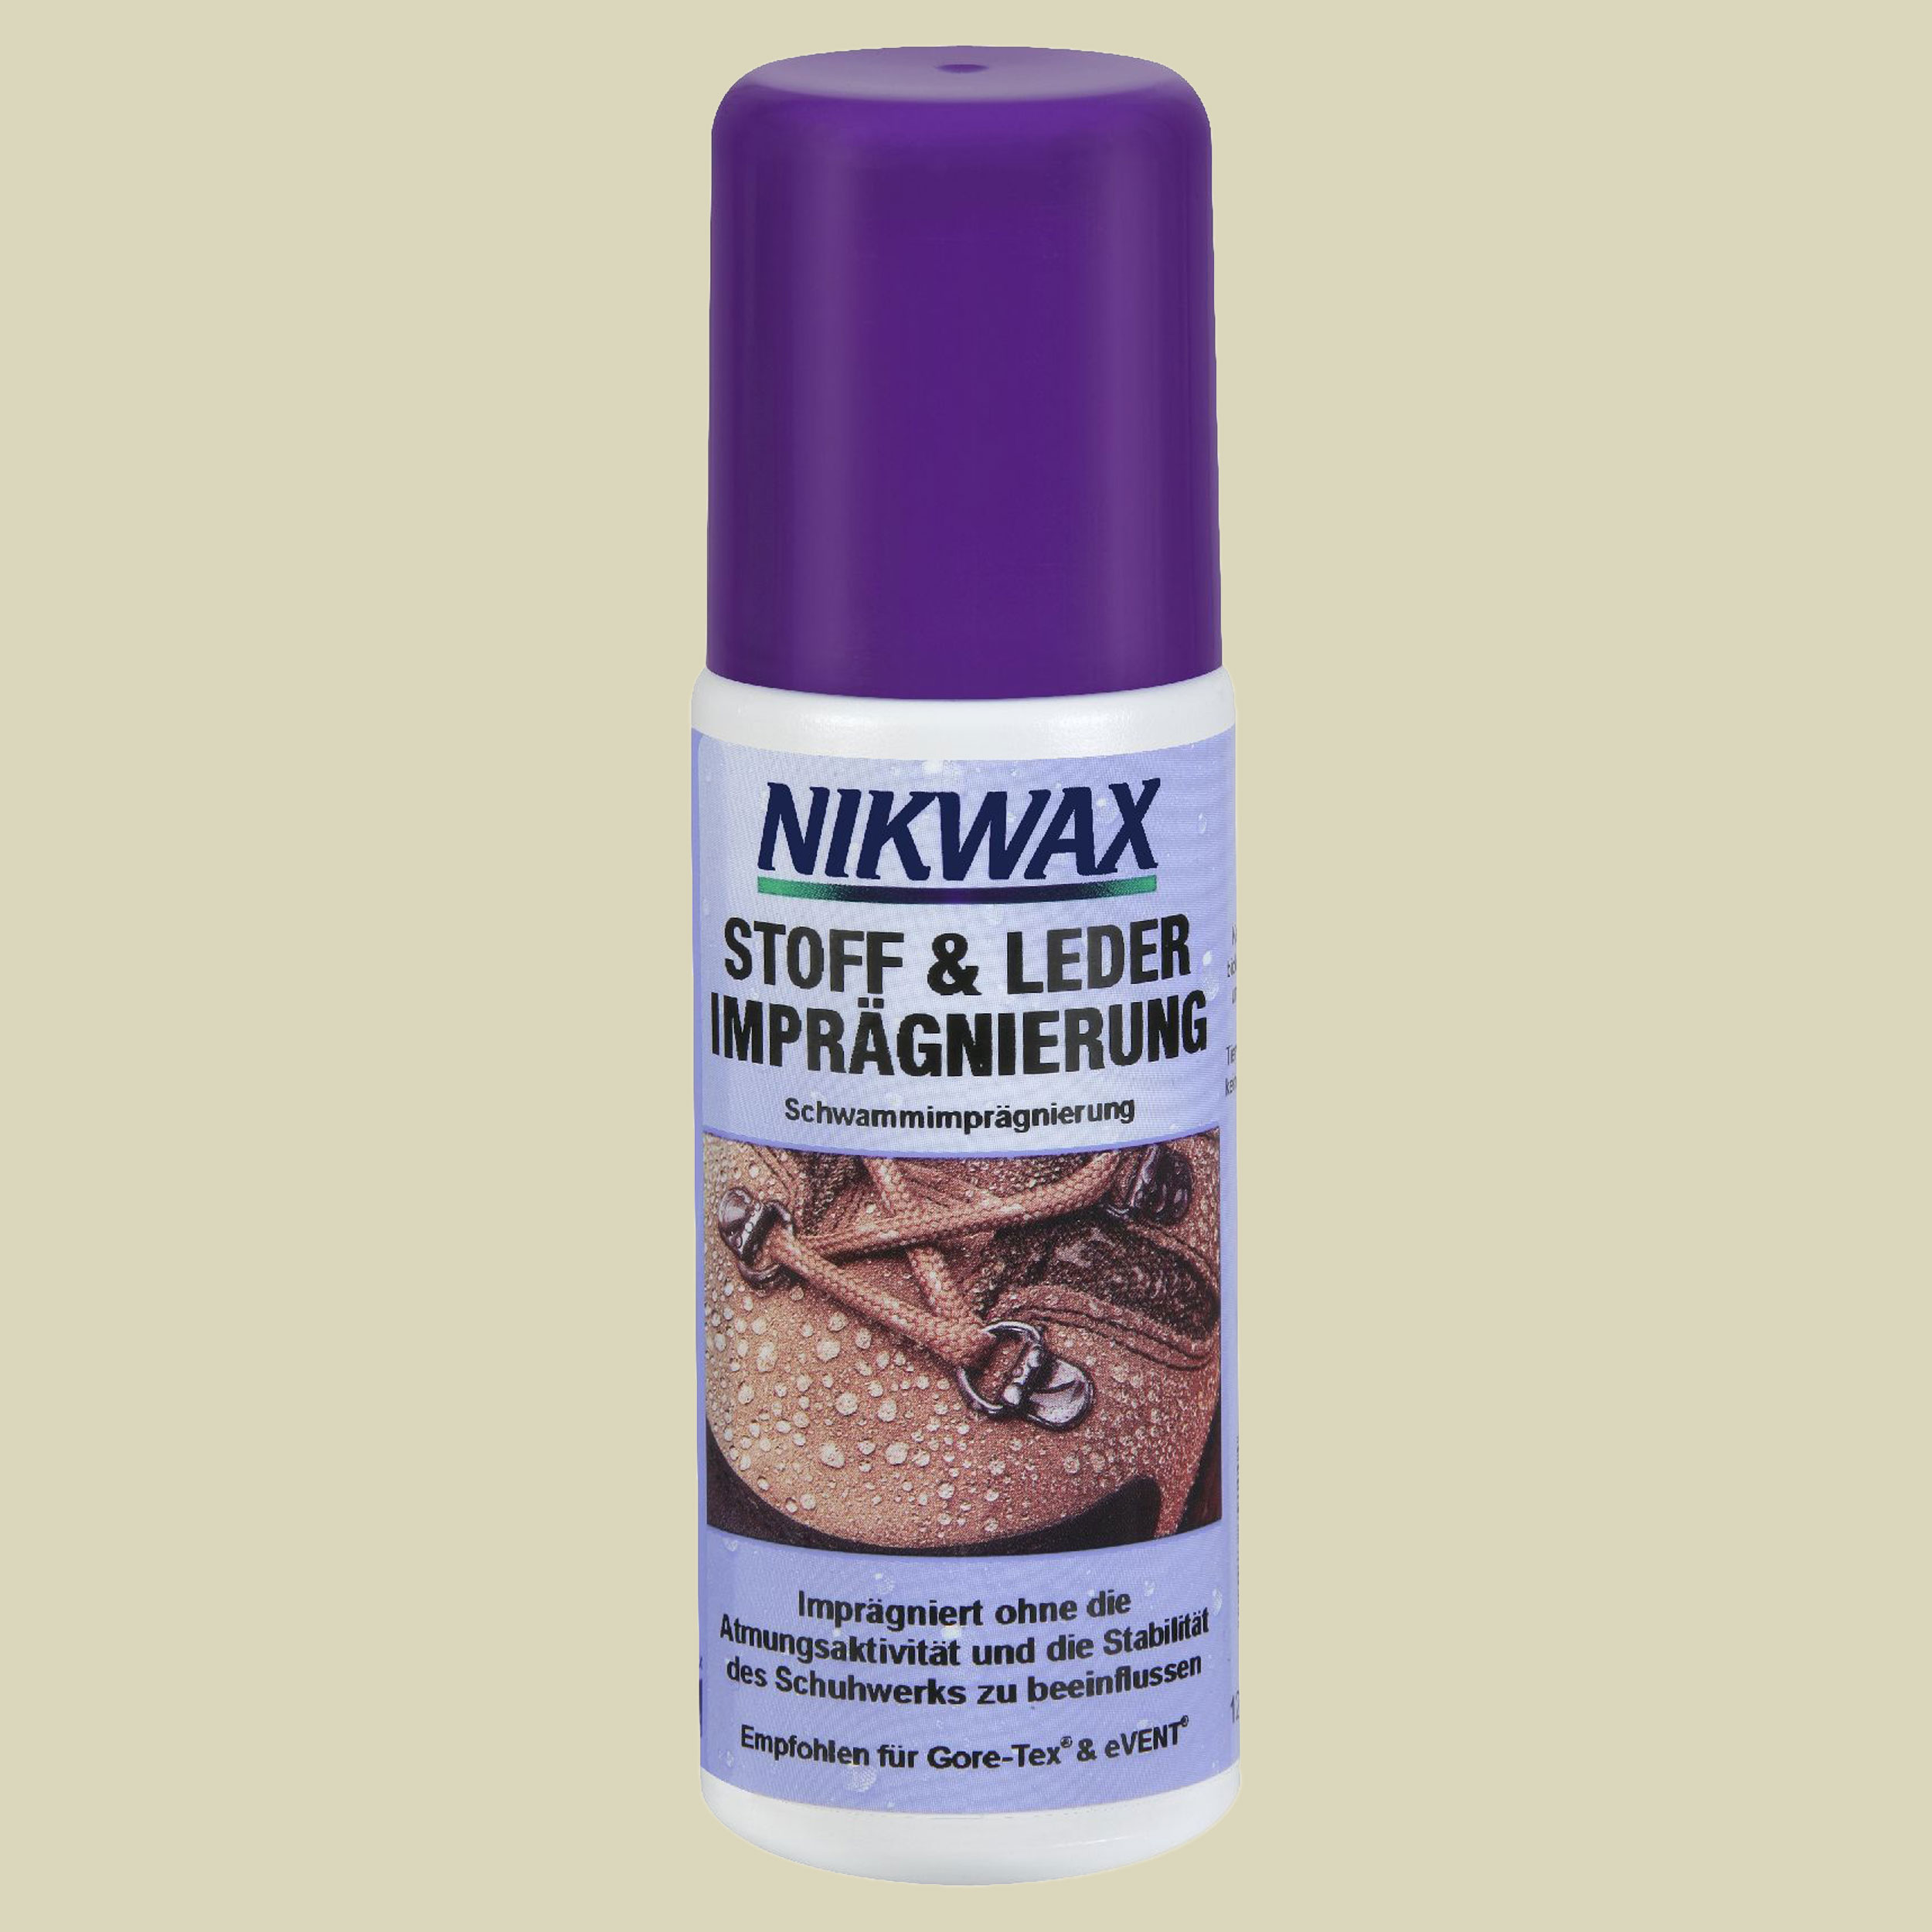 Nikwax - Stoff & Leder Imprägnierung Spray-On 125ml Inhalt 125  ml-Imprägnierspray für Schuhe- naturzeit